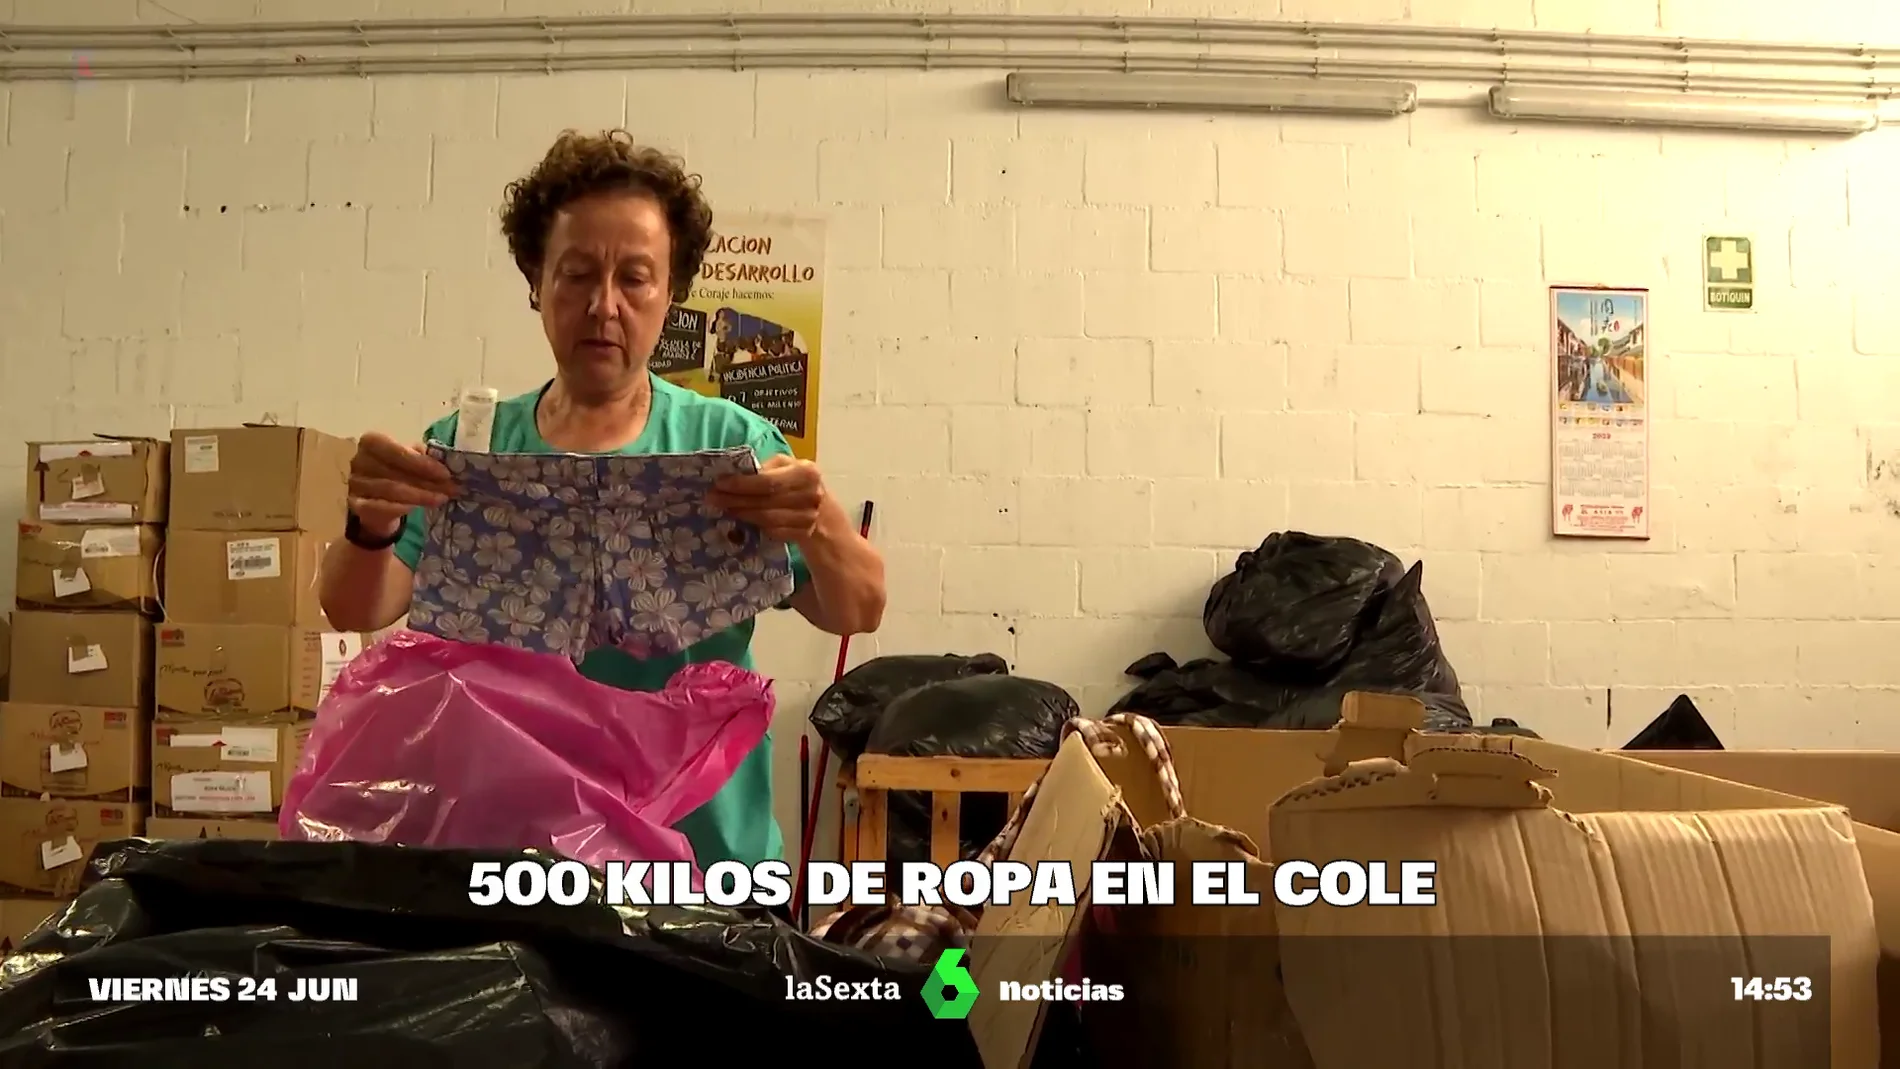 Tiendas de segunda mano de asociaciones benéficas, la 'segunda vida' de ropa que se los niños un colegio de Sevilla curso